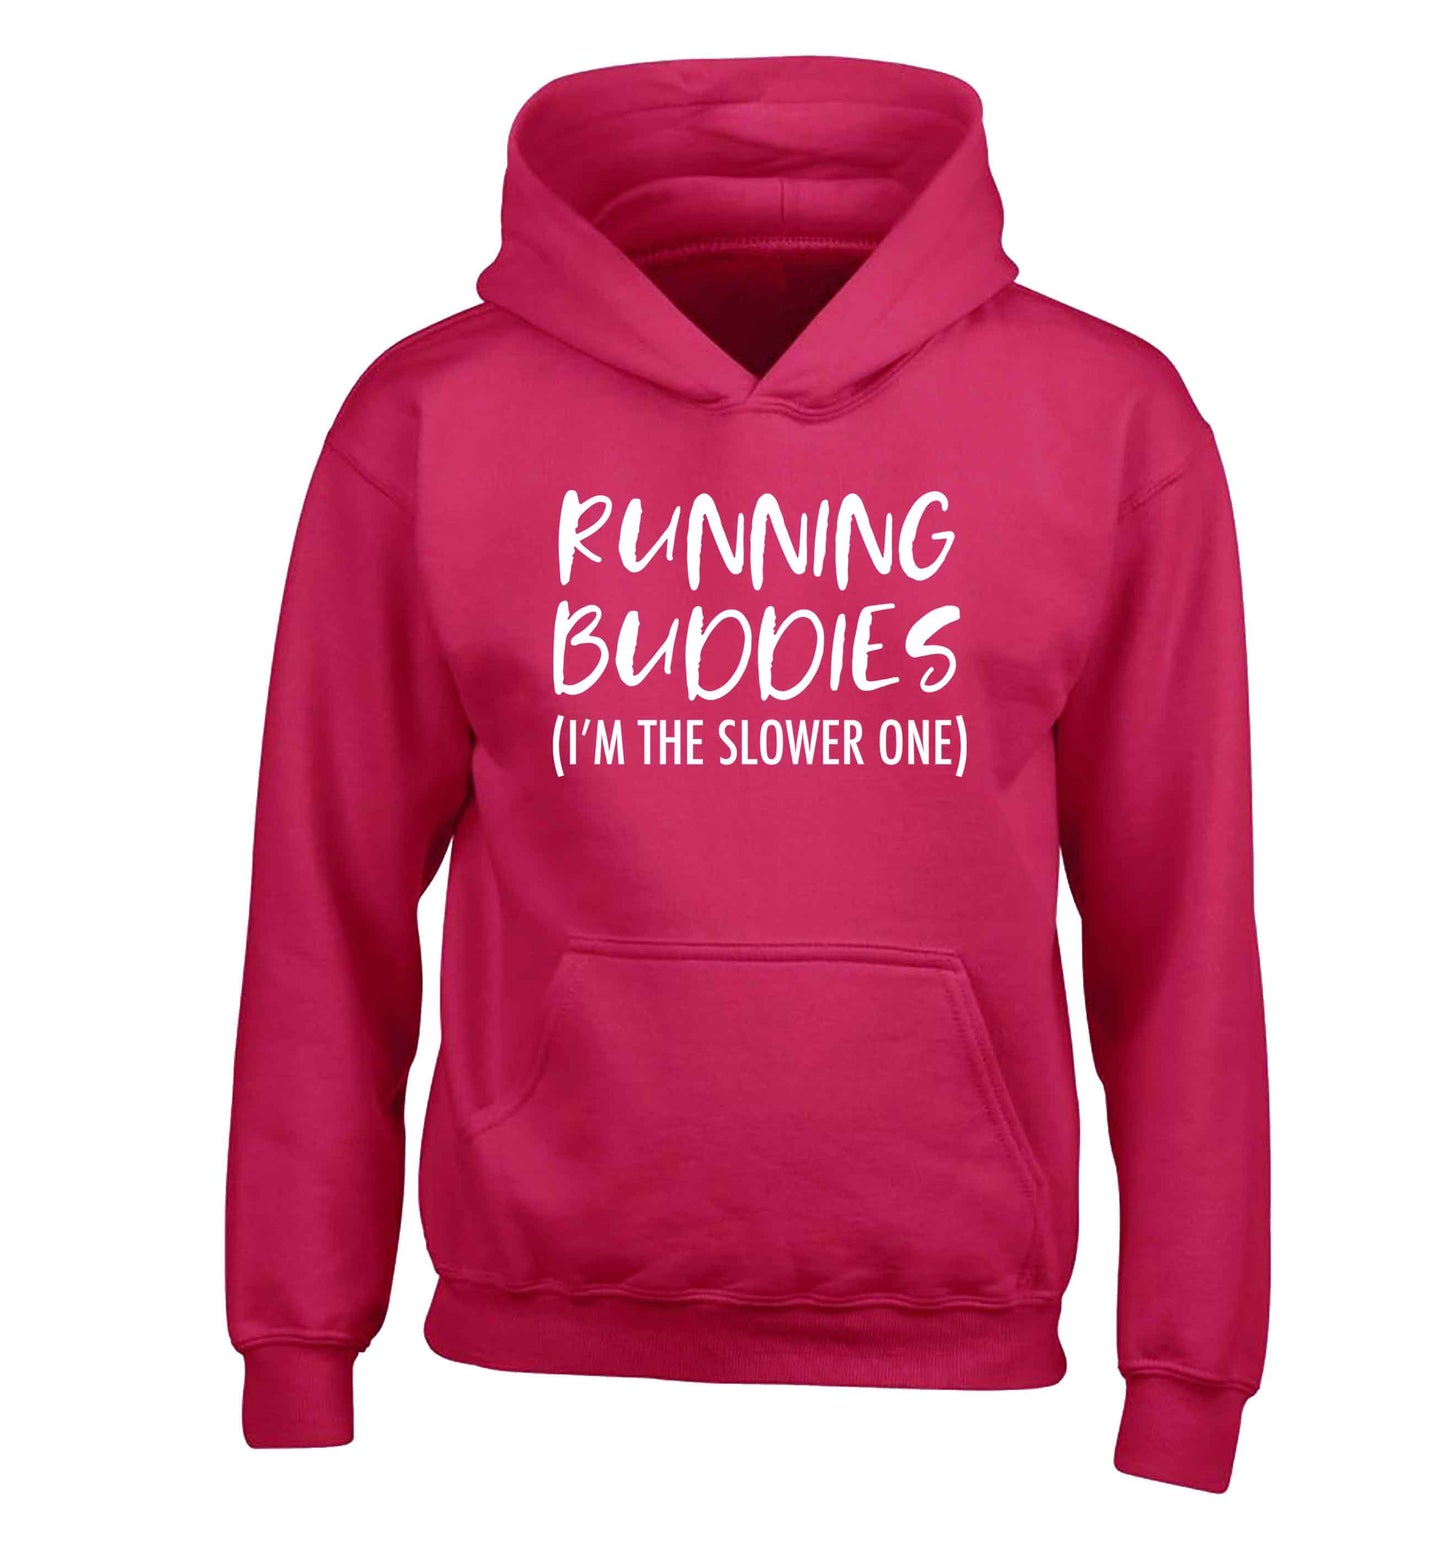 Running buddies (I'm the slower one) children's pink hoodie 12-13 Years